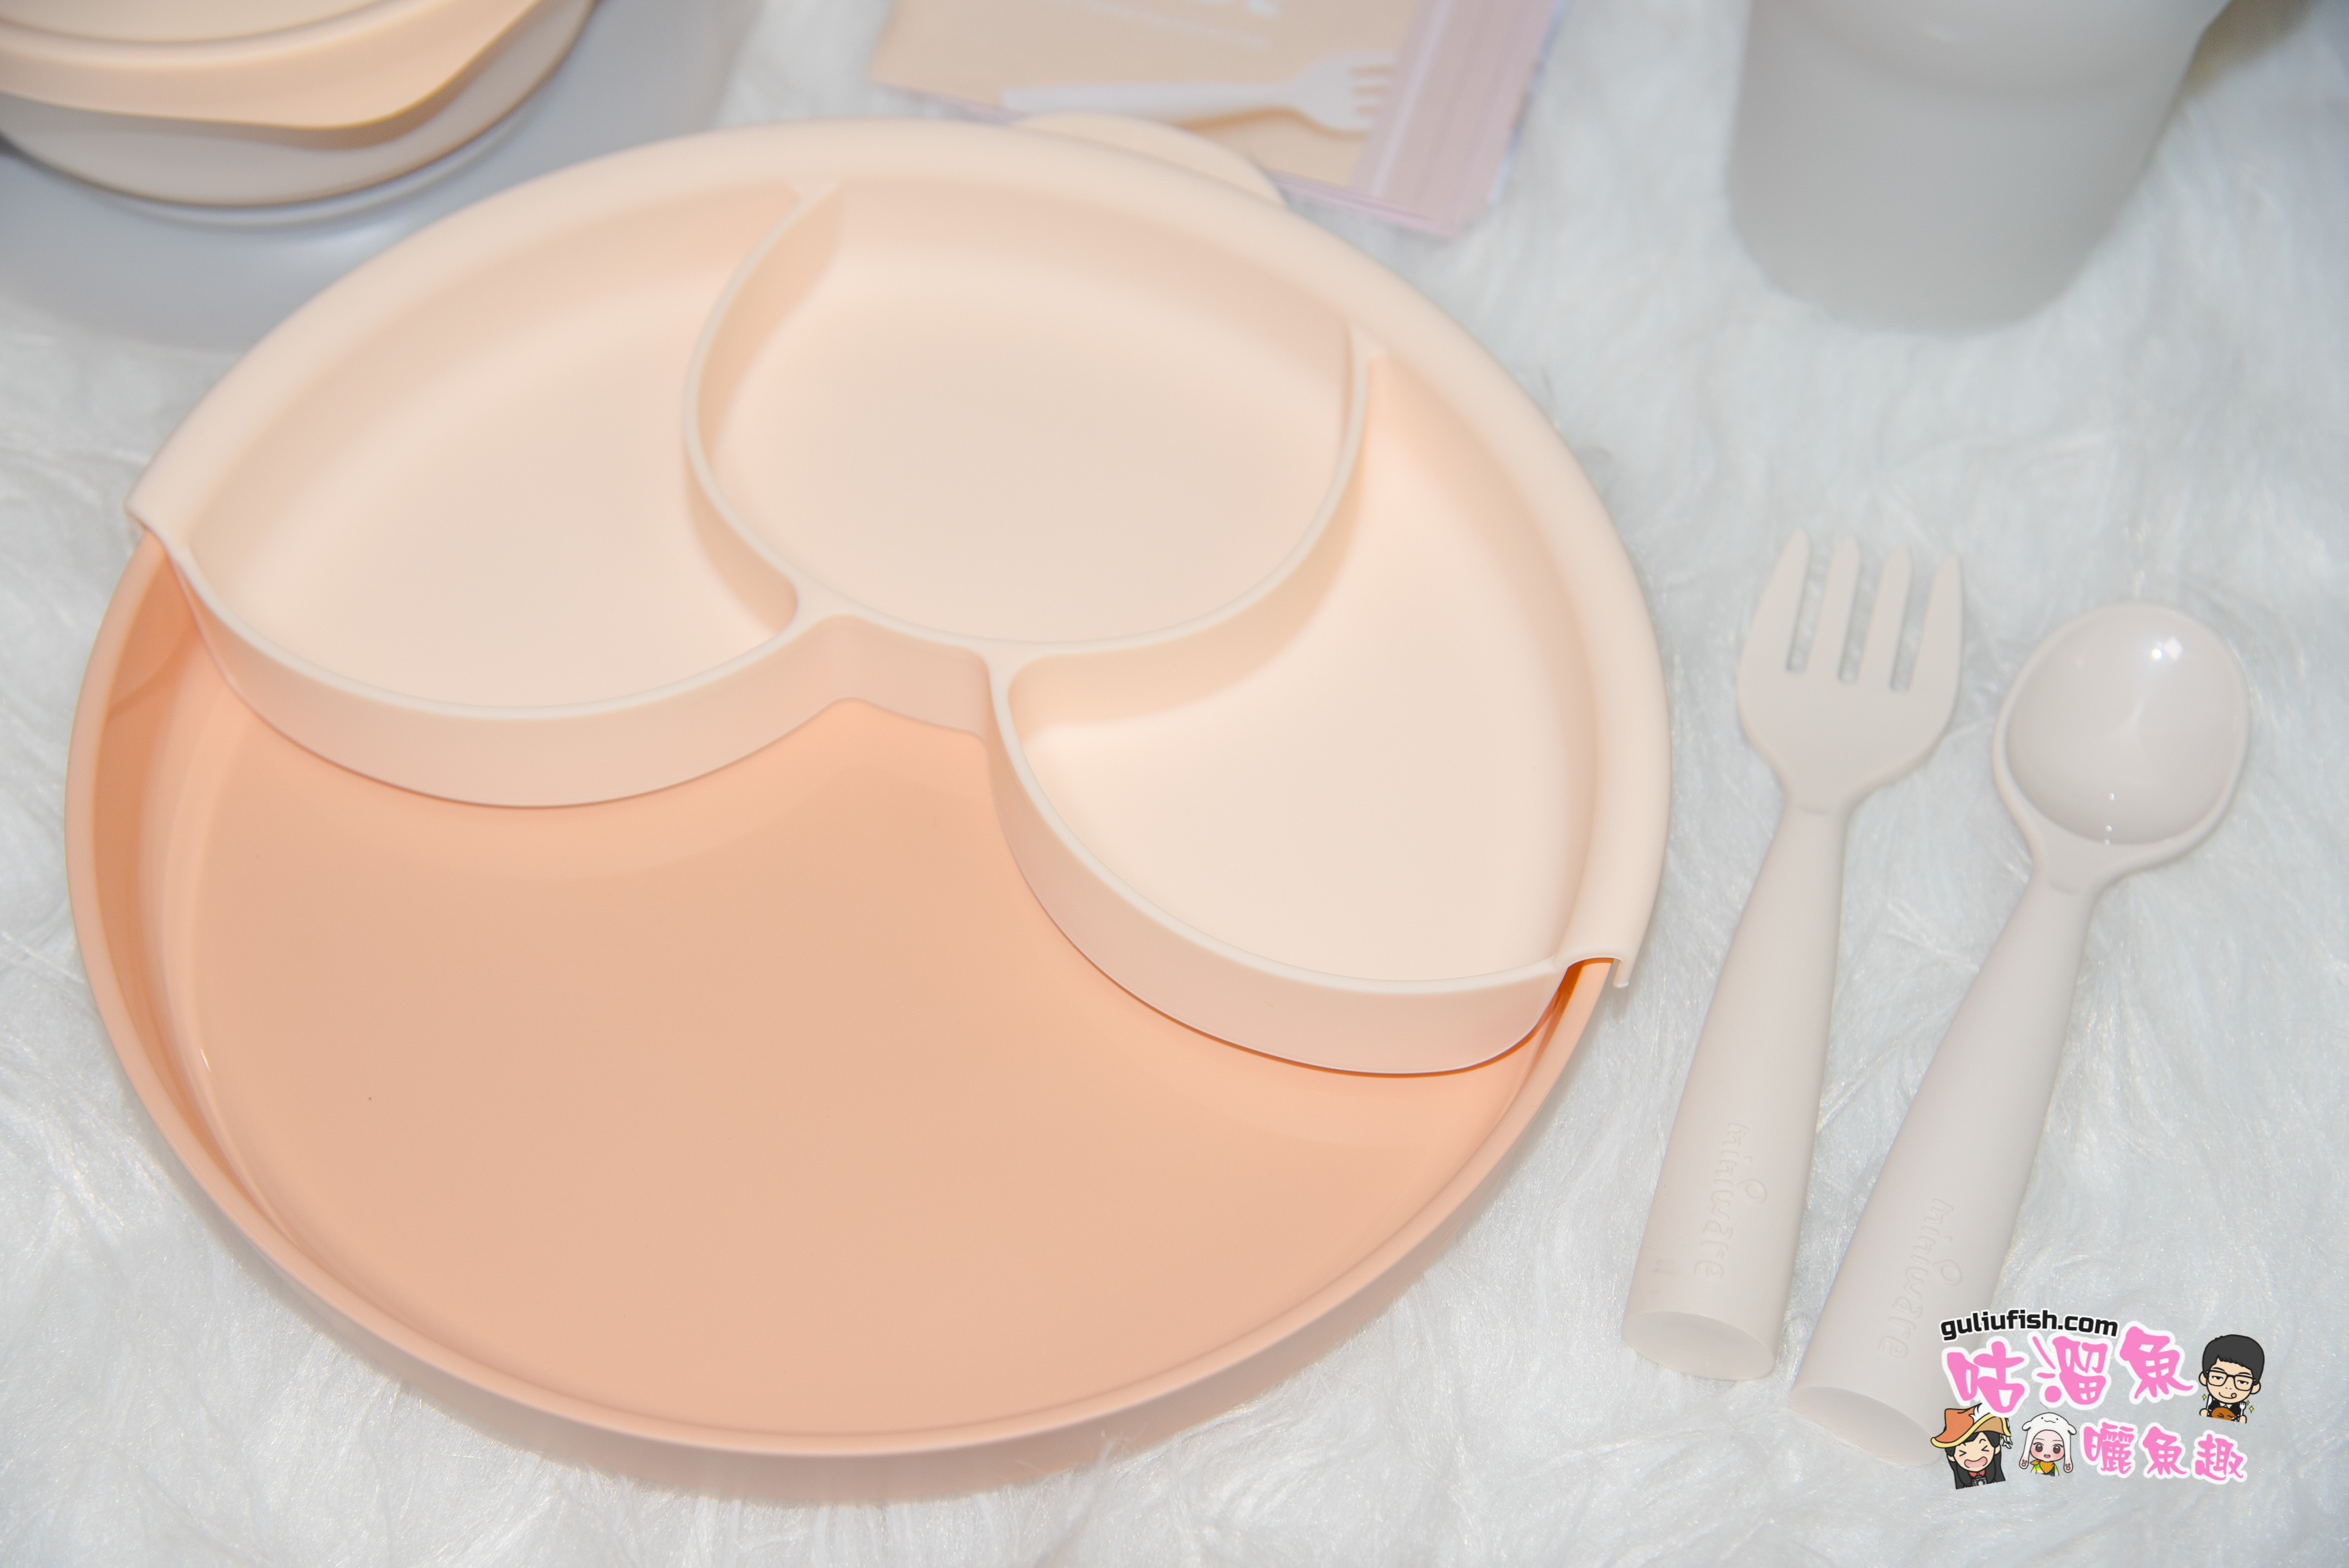 寶寶/兒童餐具首選》Miniware 心中第一的實用型質感餐具，100%無毒安全且環保材質製造